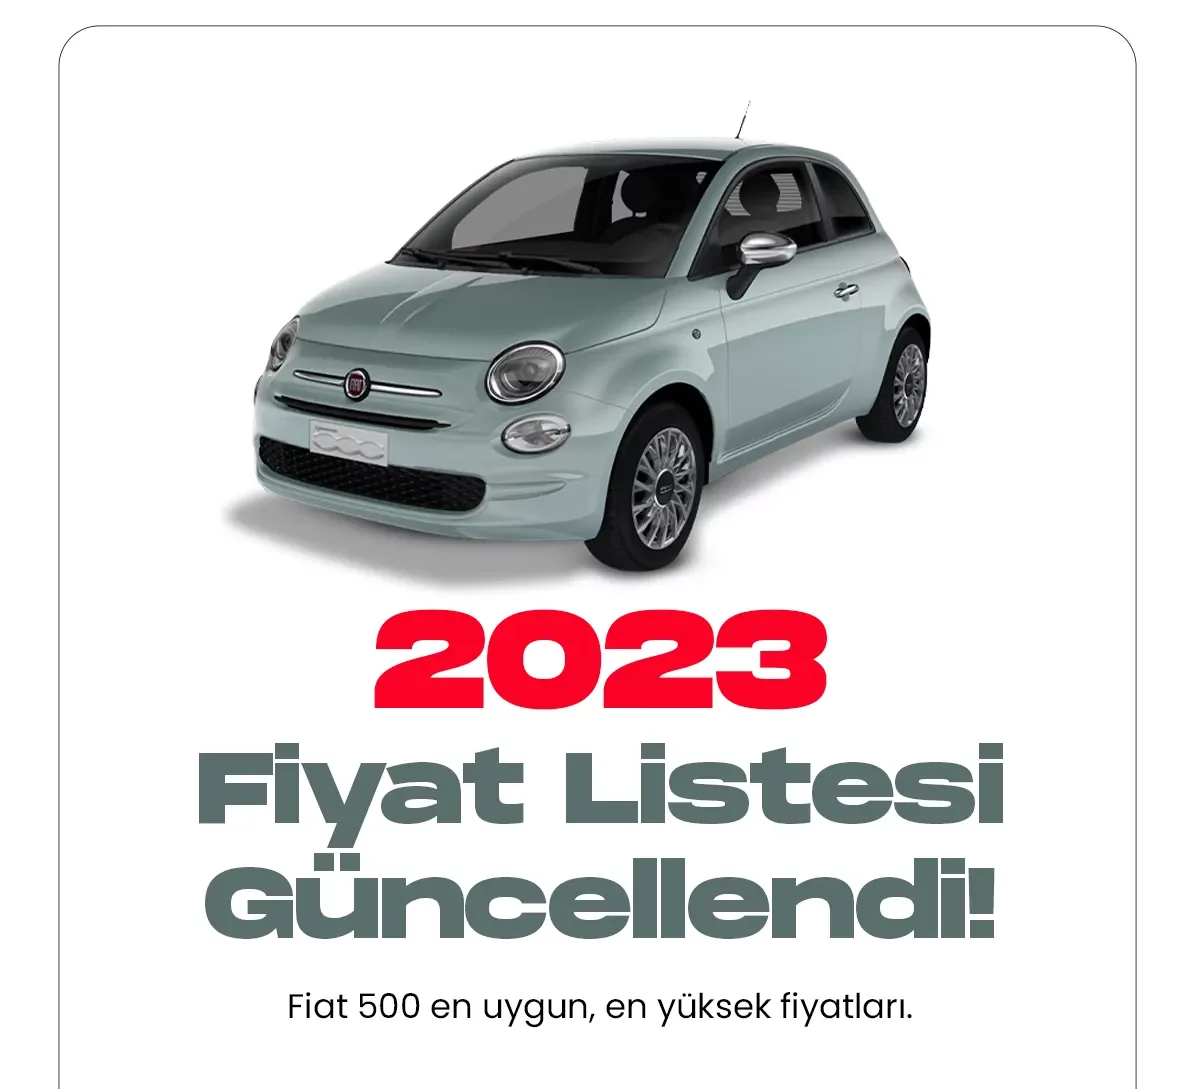 Fiat 500 Ocak fiyat listesi yayımlandı. Türkiye'nin en çok satan araç markalarından biri olan Fiat, 2023 fiyat listelerini güncelledi. Fiat araçlar uygun fiyatlı olması nedeniyle sürücülerin ilk tercihleri arasında yer alıyor. Hem erkek hem de kadın sürücüler tarafından çok sık tercih ediliyor.